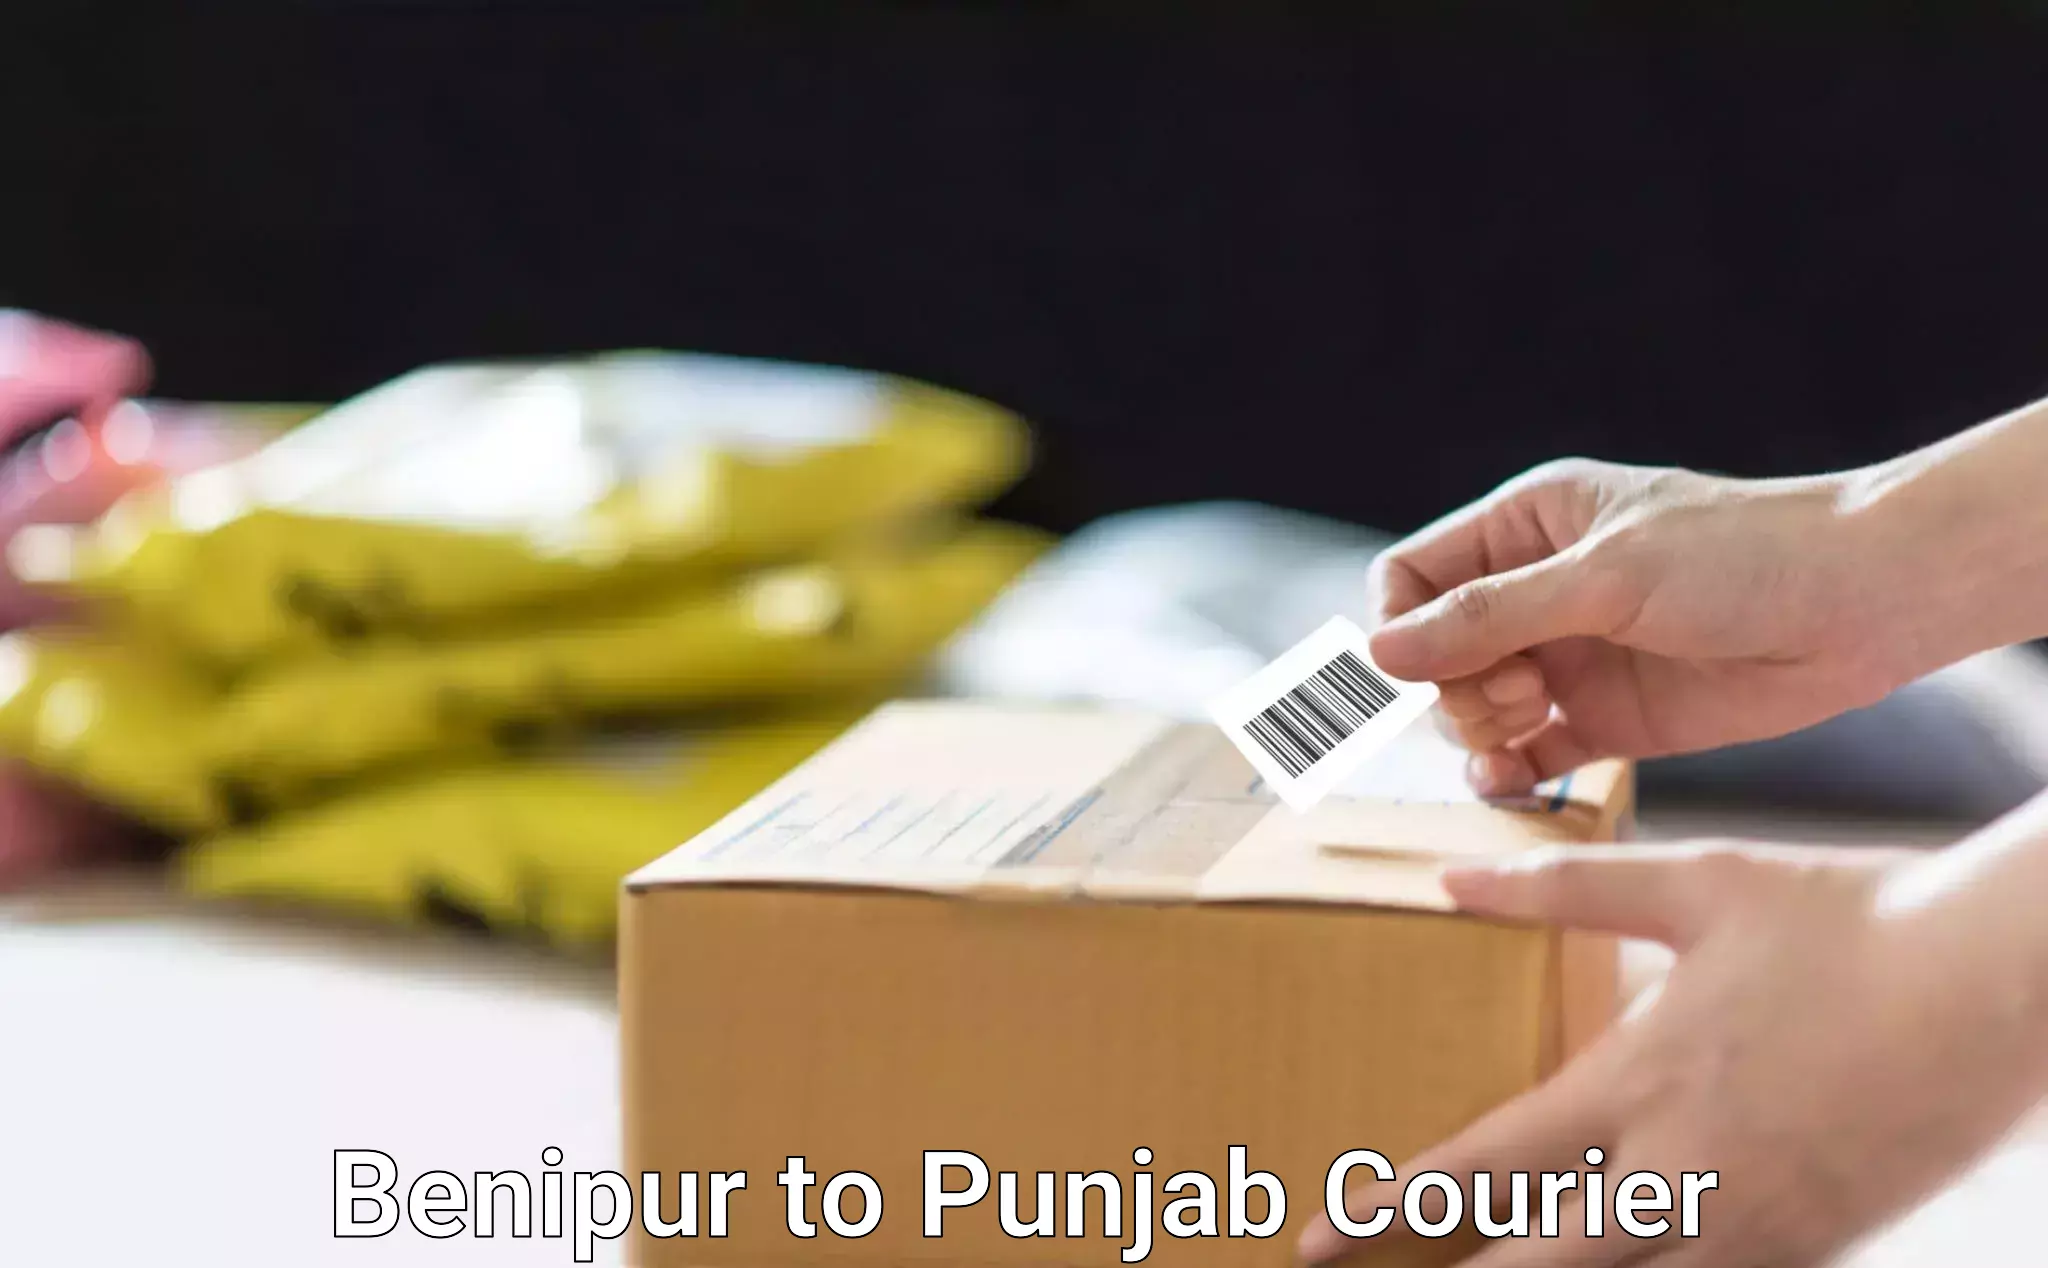 Home furniture shifting Benipur to Punjab